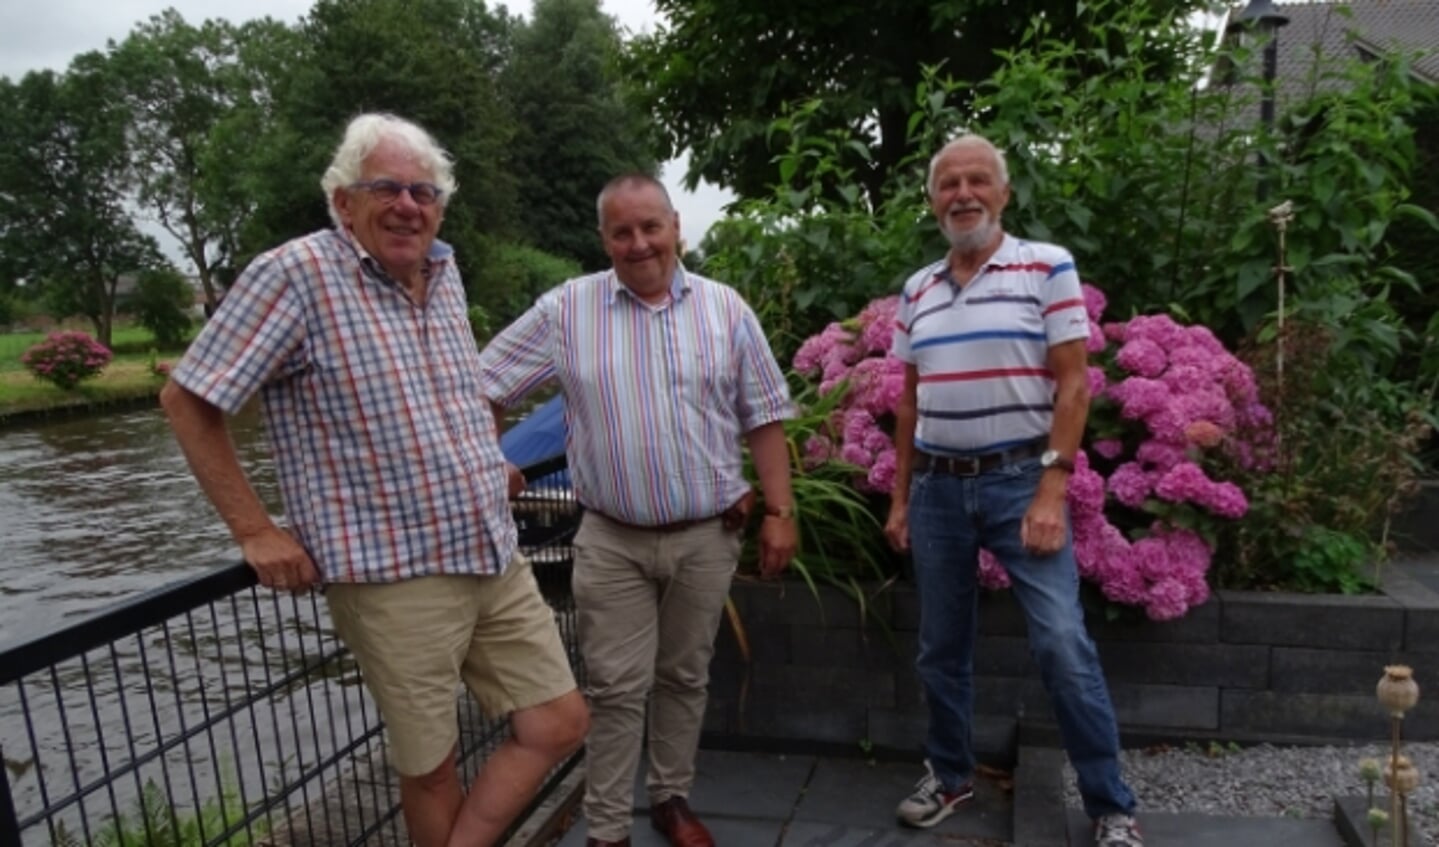 Bestuursleden van Energie Oudewater. V.l.n.r. Henk Brouwer, Fred van Schaik en Aad van de Sande.